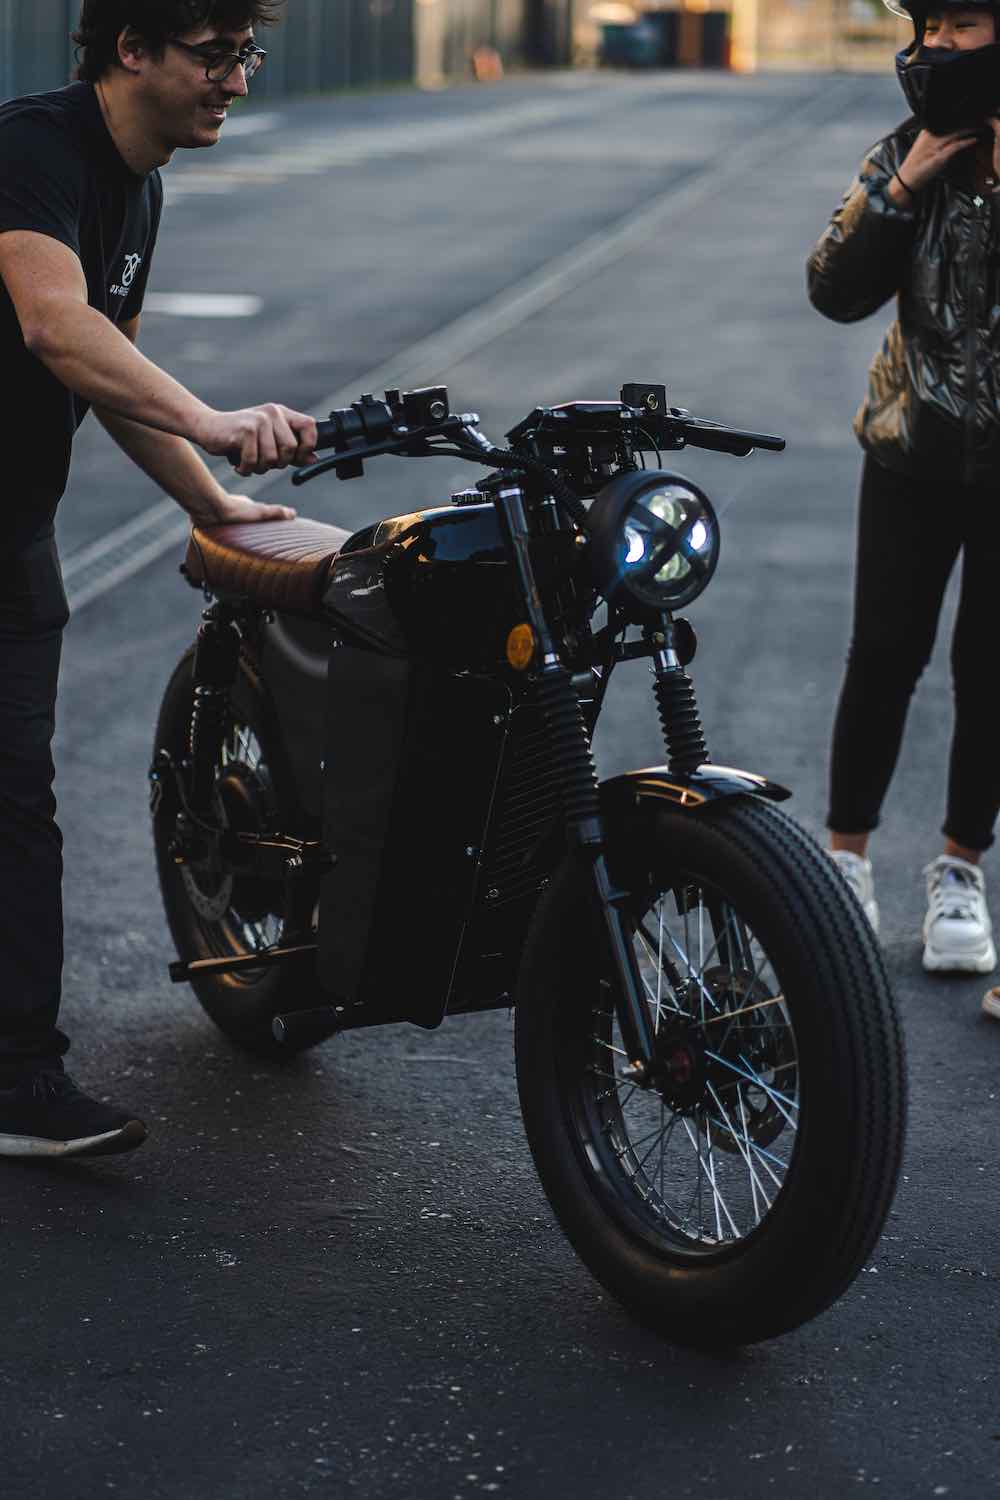 OX Riders, motocicletas eléctricas, inteligentes y retrofuturistas diseñadas en España